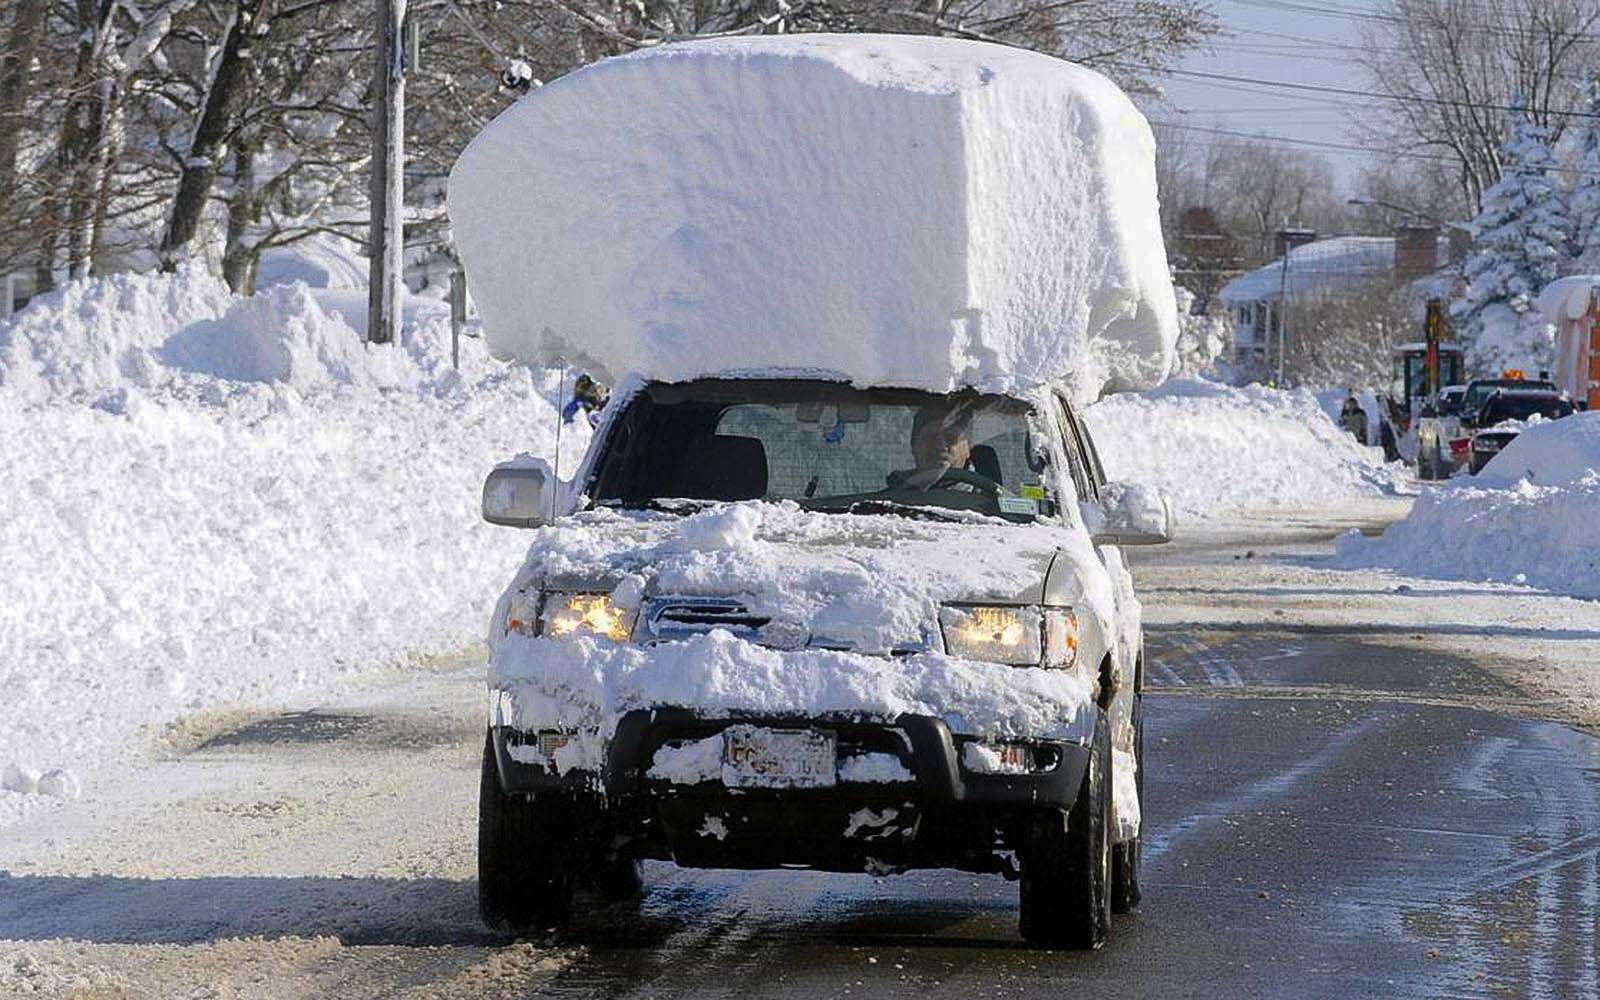 После снегопада следует полностью очищать автомобиль от снега. С сугробом на крыше ездить не стоит: при резком торможении весь снег с крыши окажется на стекле и капоте машины, ограничив видимость, а так и до аварии недалеко.